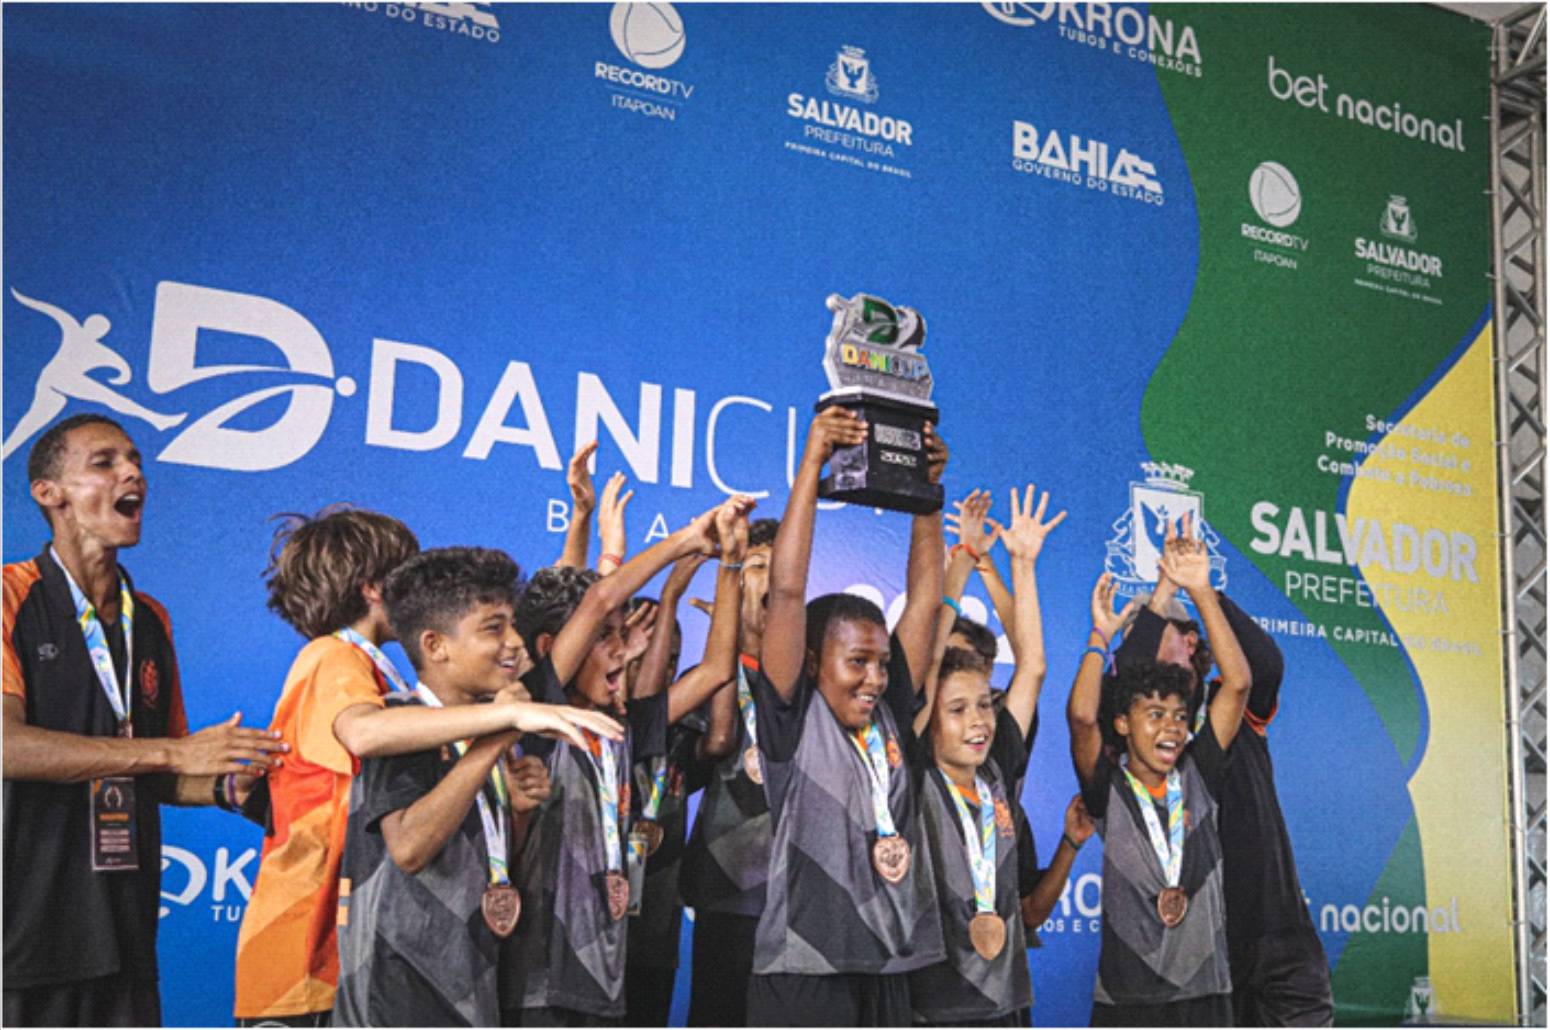 Santos FC é campeão da Dani Cup Sub-11 - Santos Futebol Clube